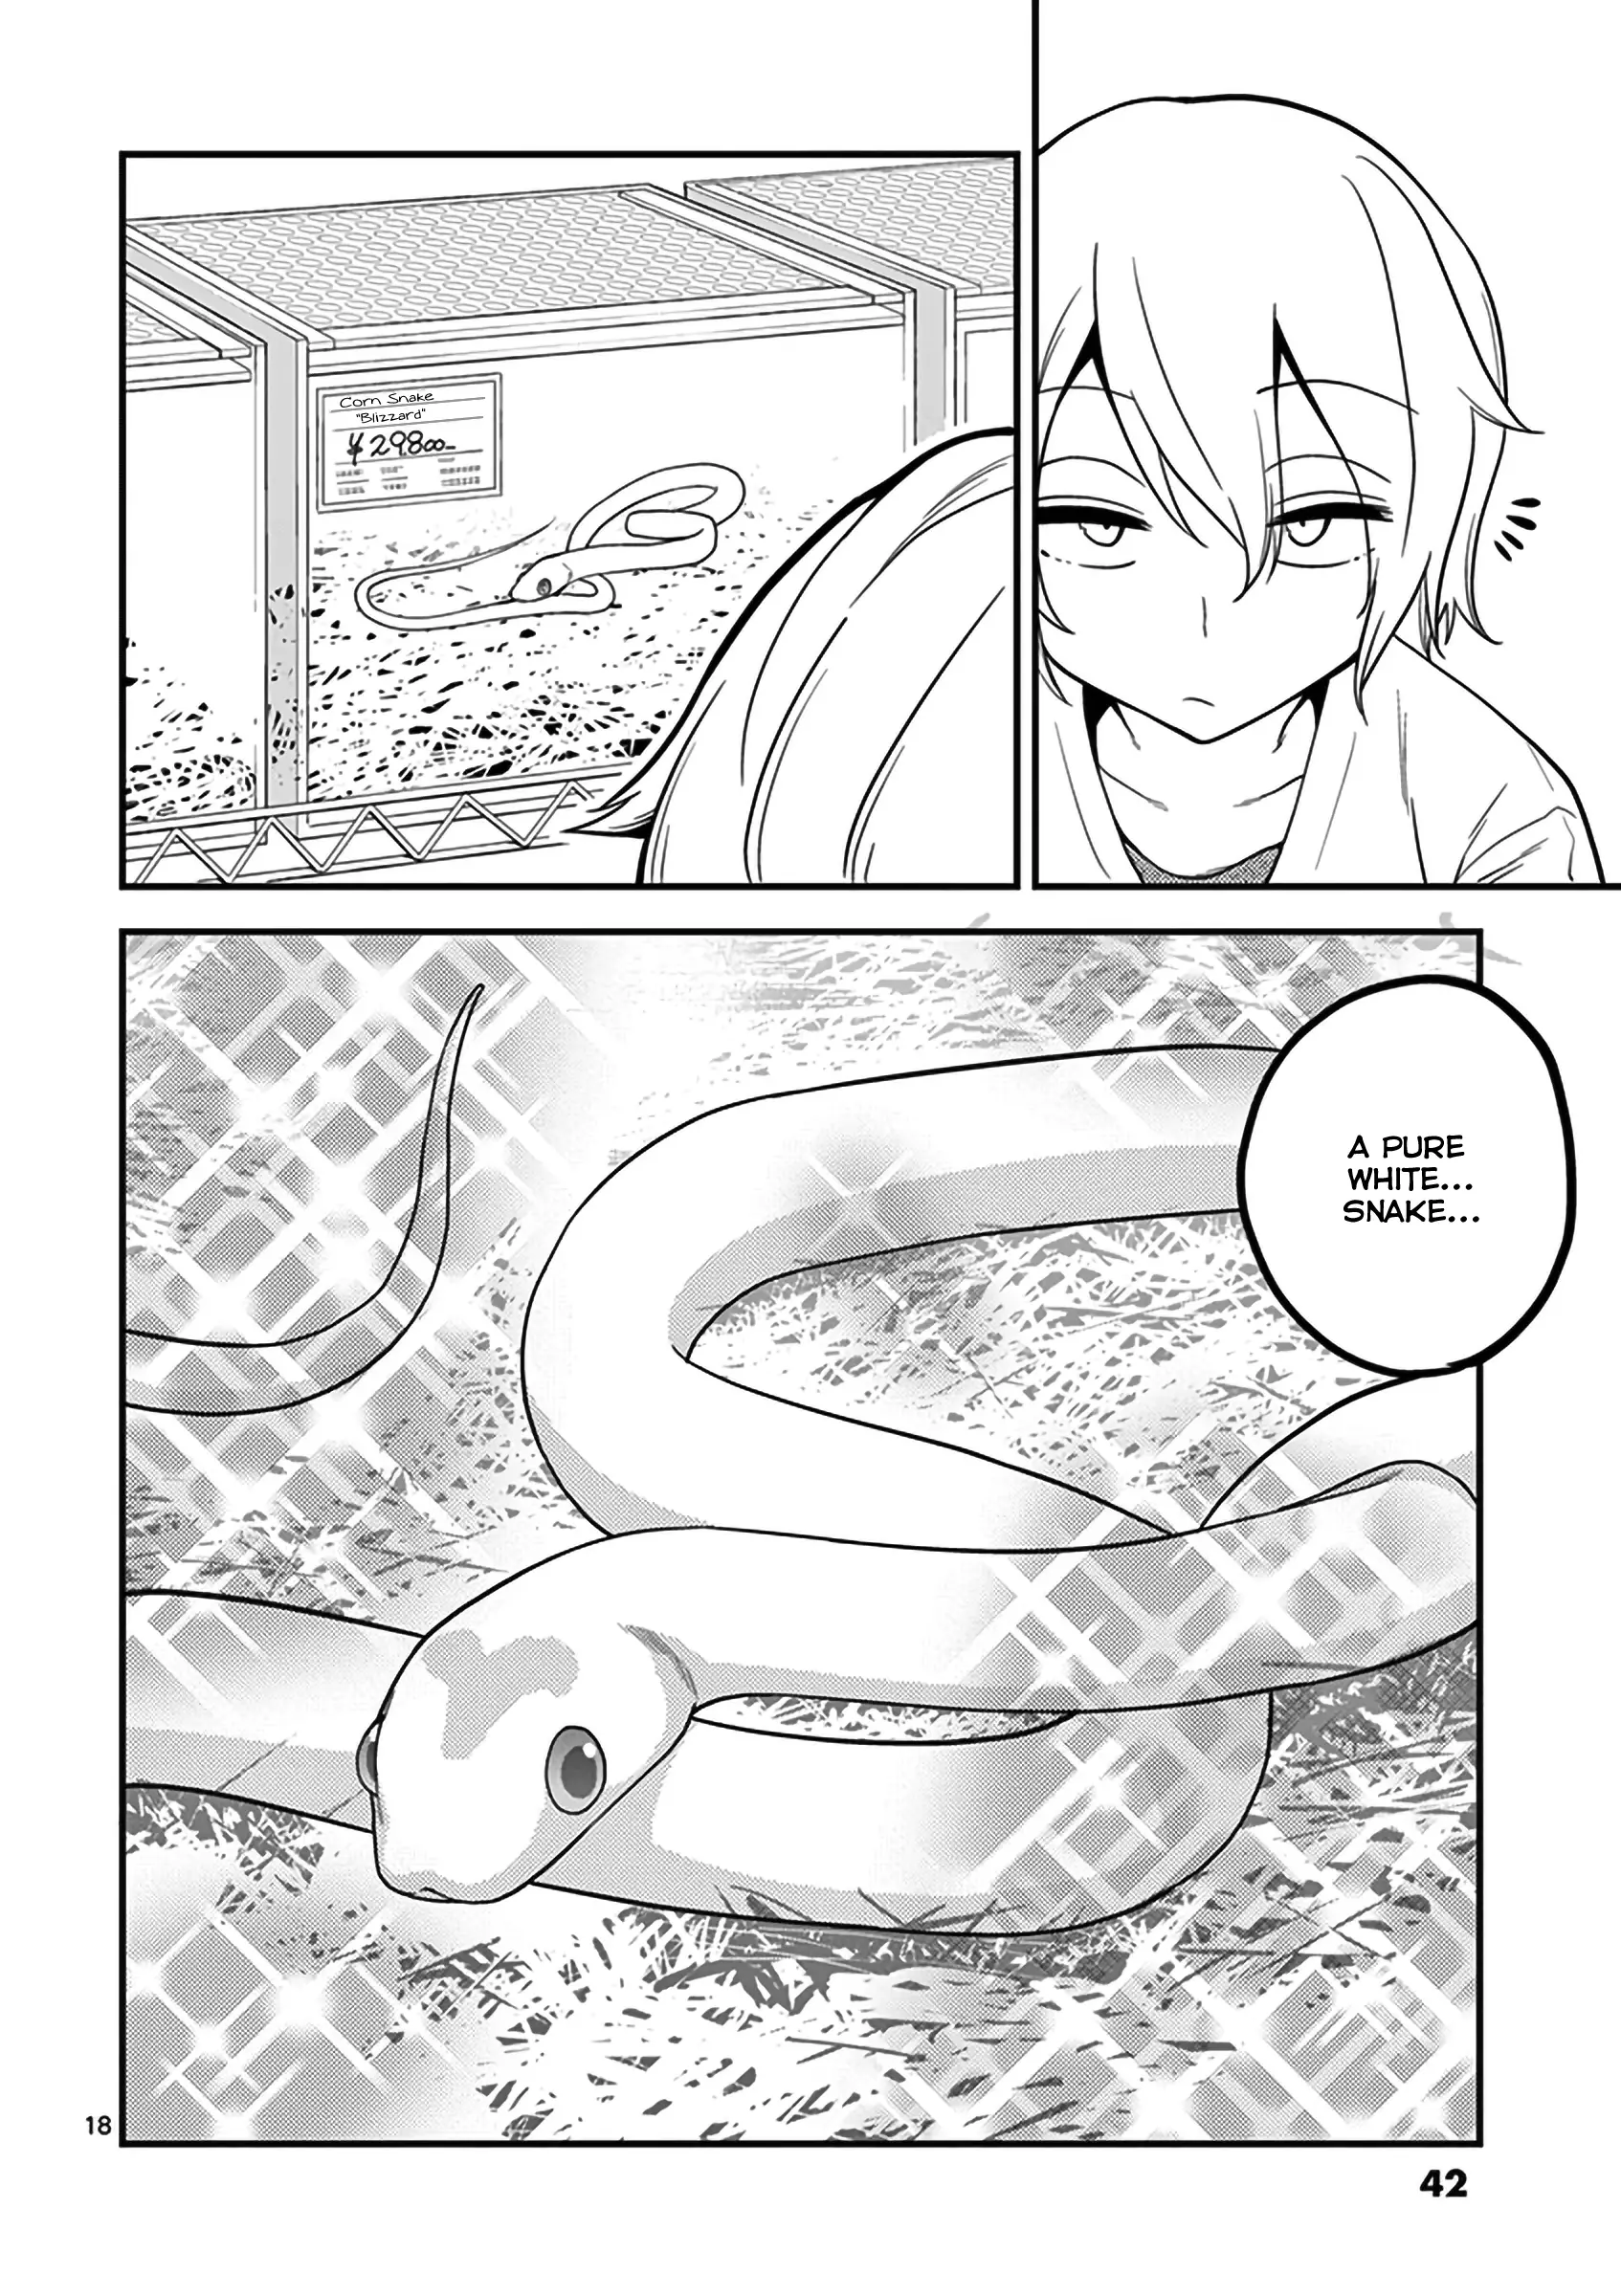 Secret Reptiles - 11 page 20